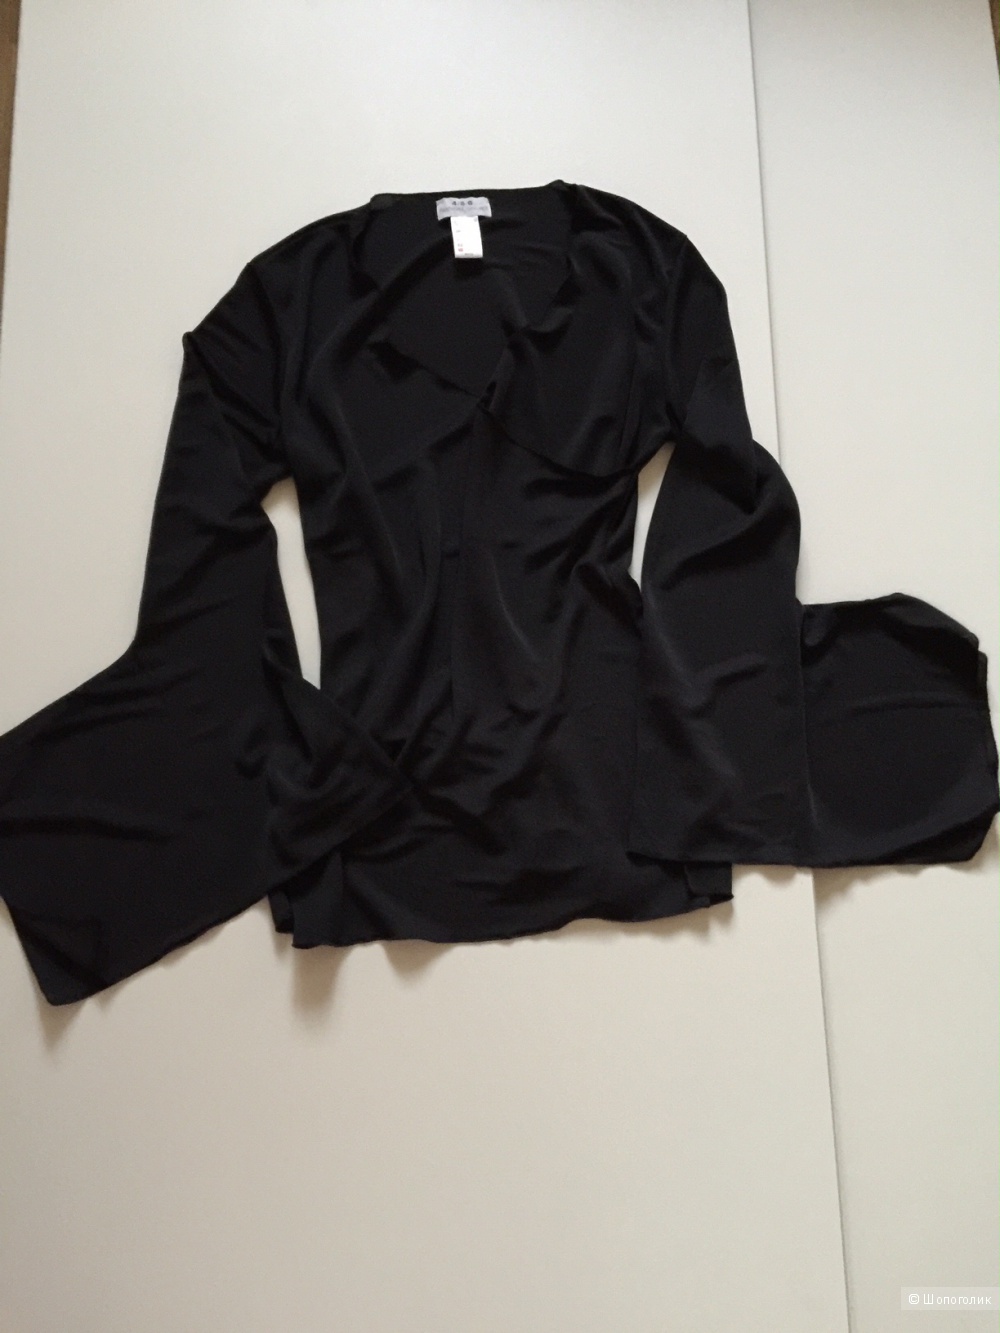 Оригинальная черная блузка марки  4/5/6 Fascion consept размер 46-48